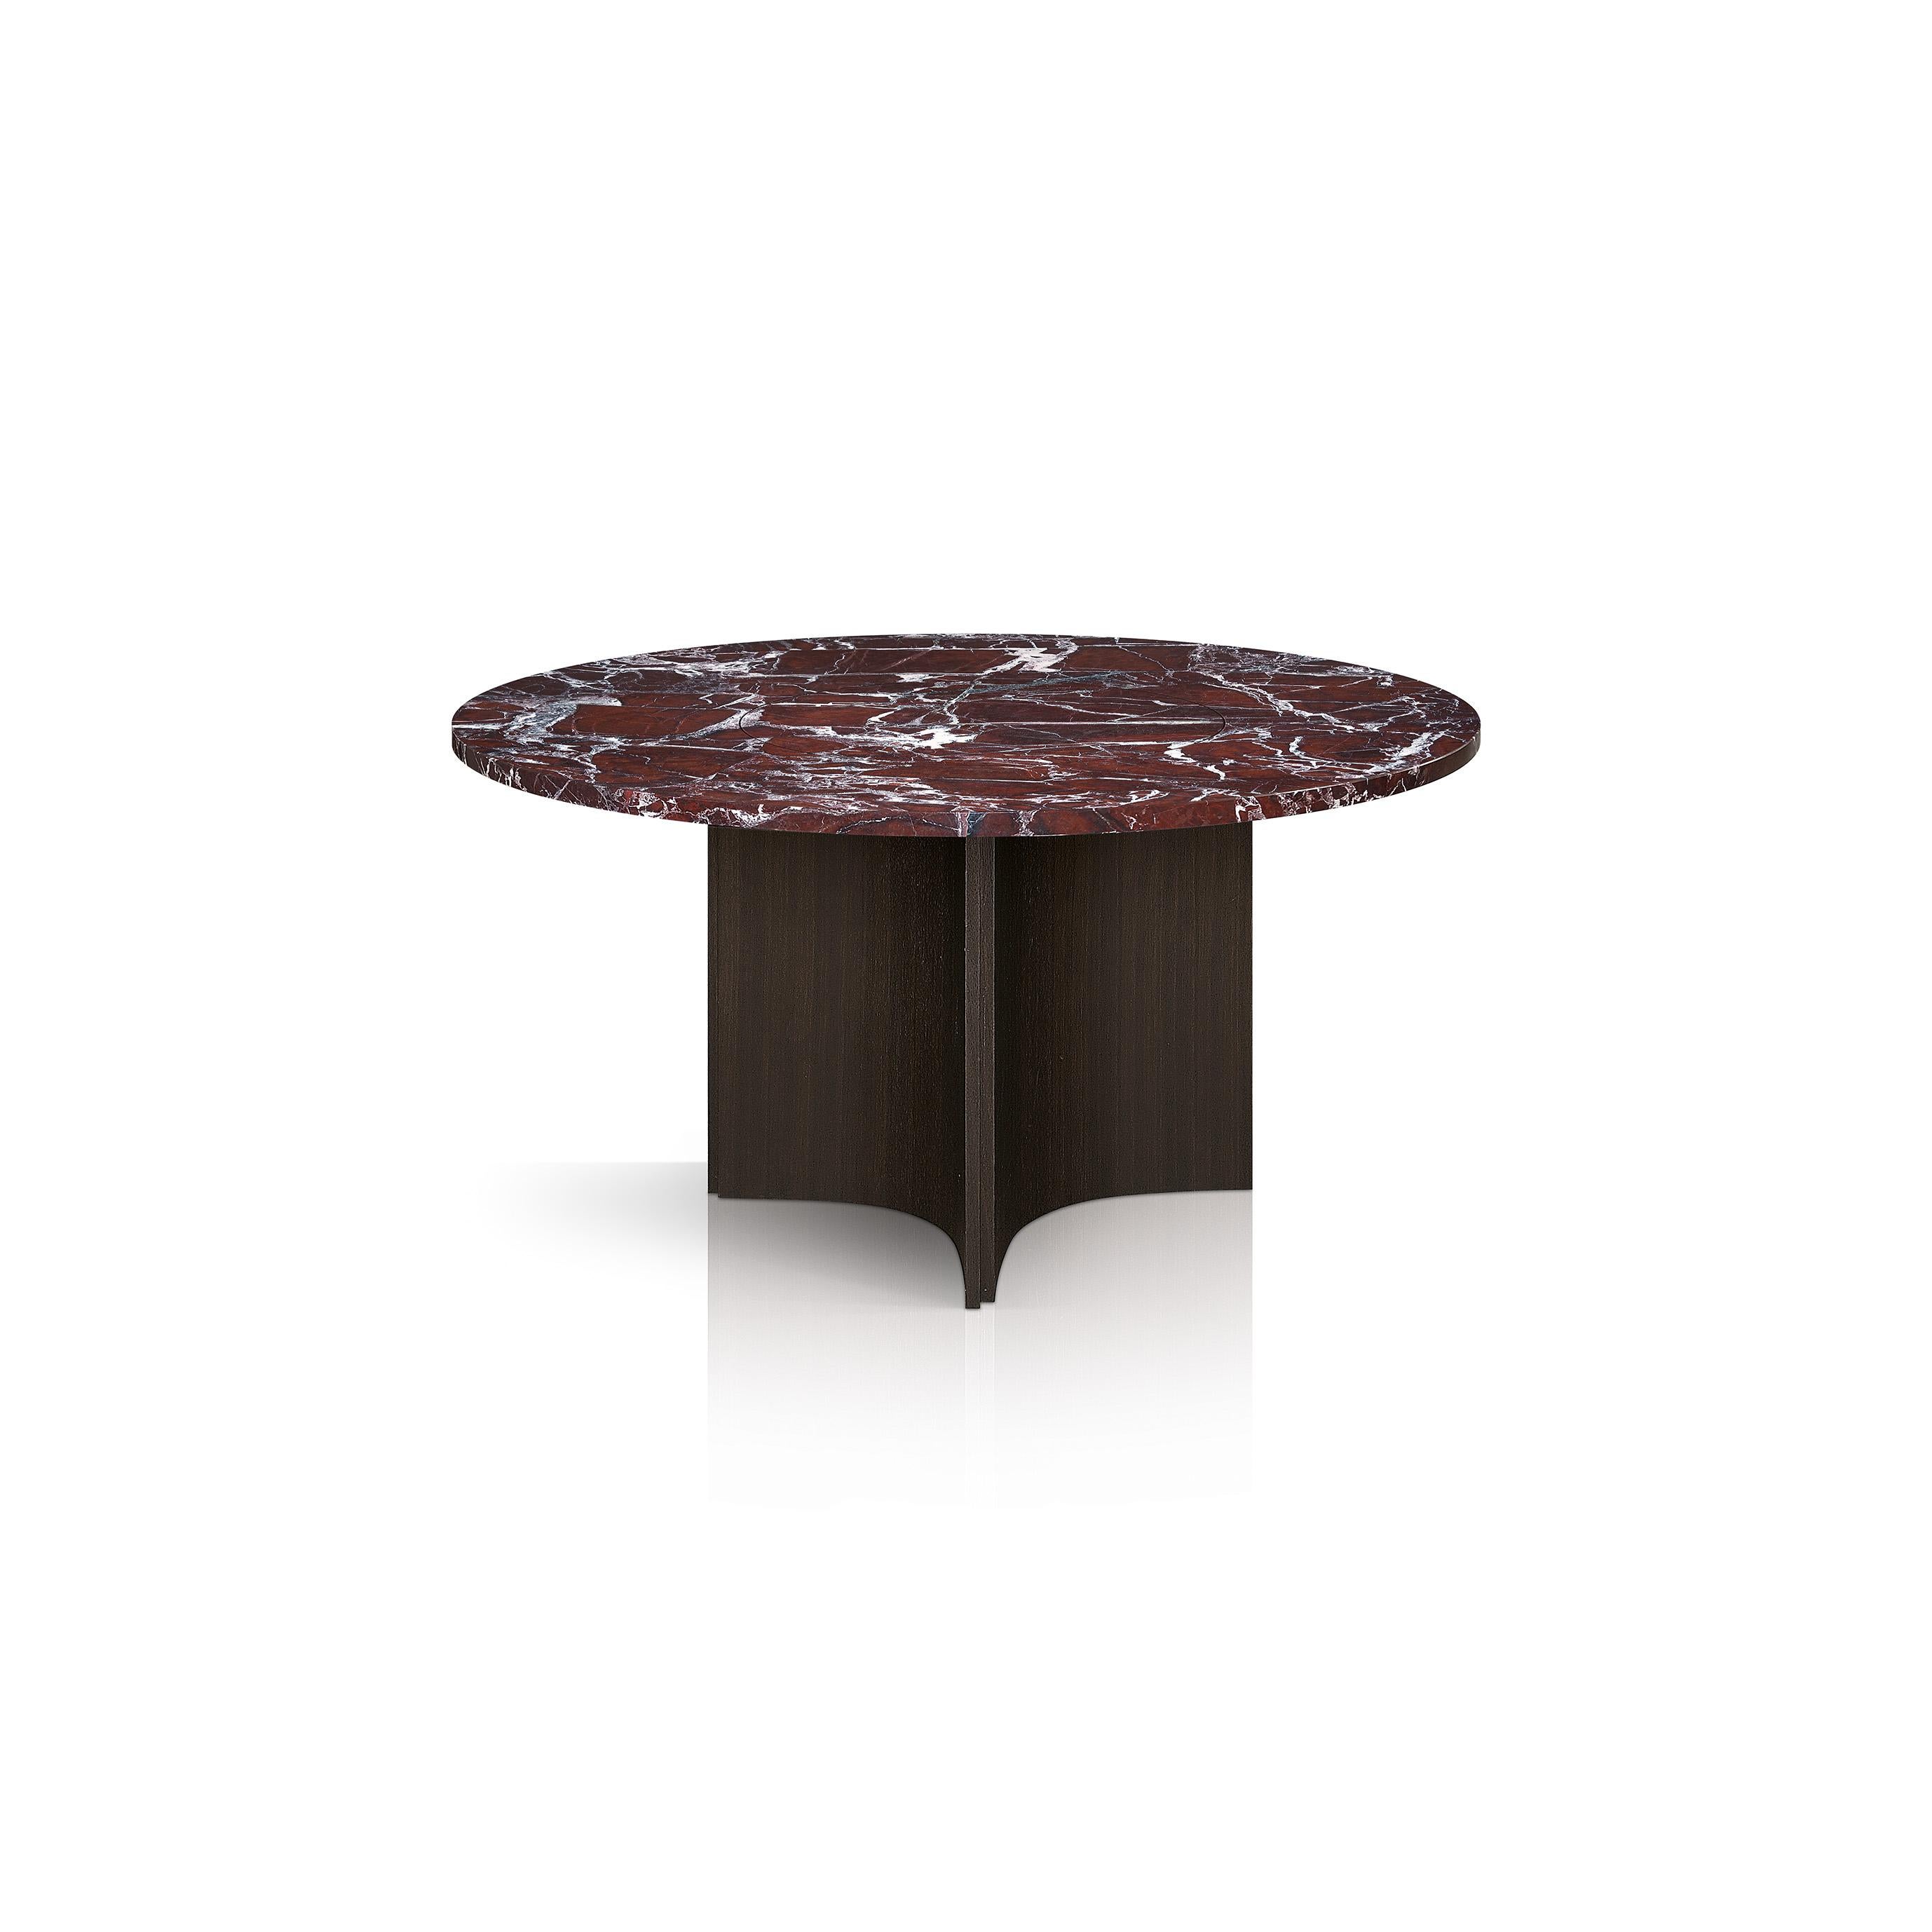 Au centre d'une salle à manger moderne et contemporaine, cette table est dotée d'un remarquable plateau en marbre rouge vin de Steele reposant sur un piètement de style colonne en acier plaqué de chêne. Faisant partie de la Collection Fossil de